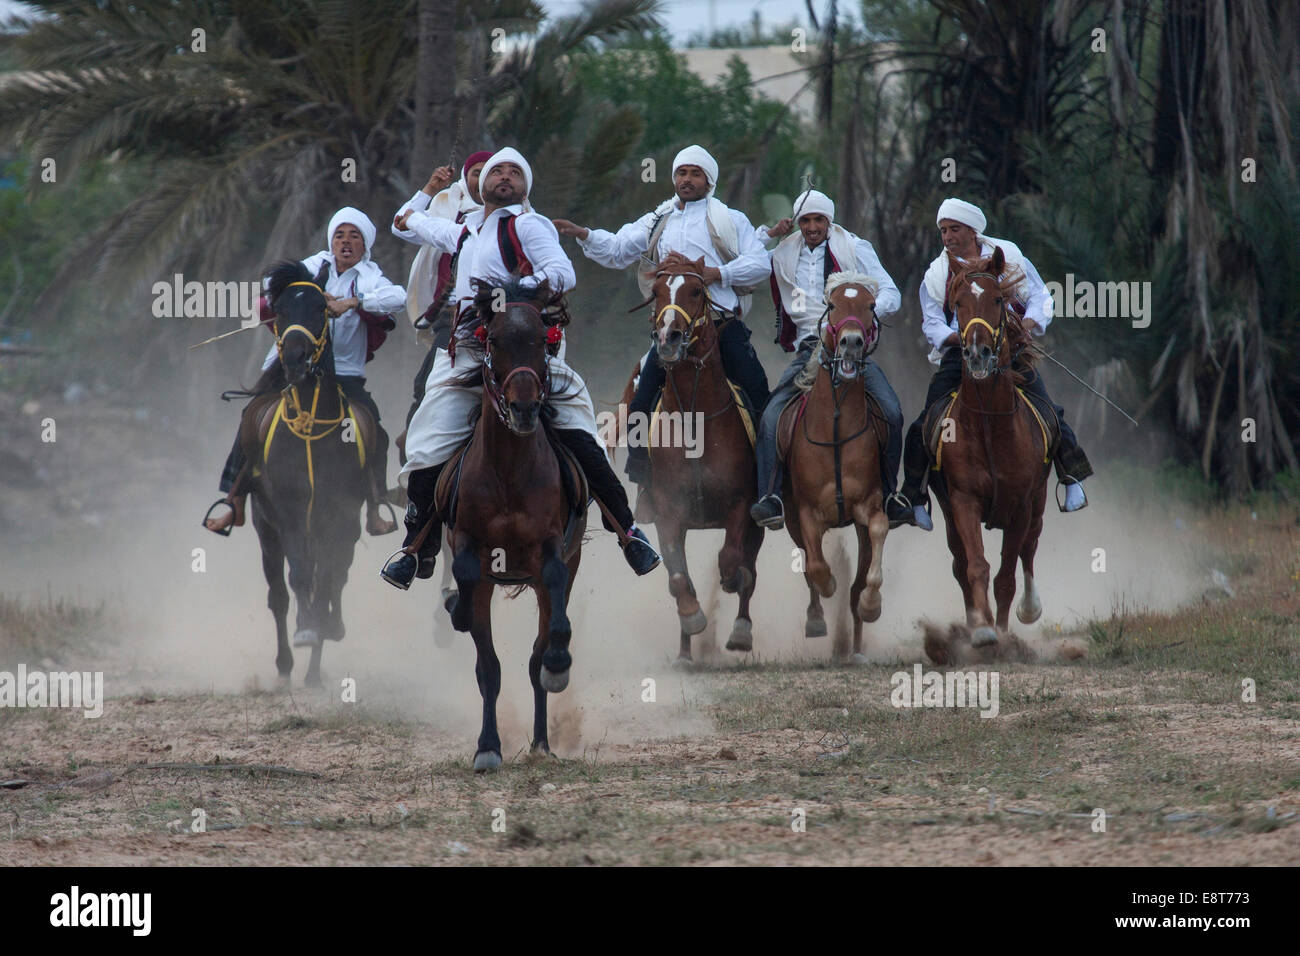 Reiterspiele, Fantasia, Midoun, Djerba, Tunesien Stockfoto